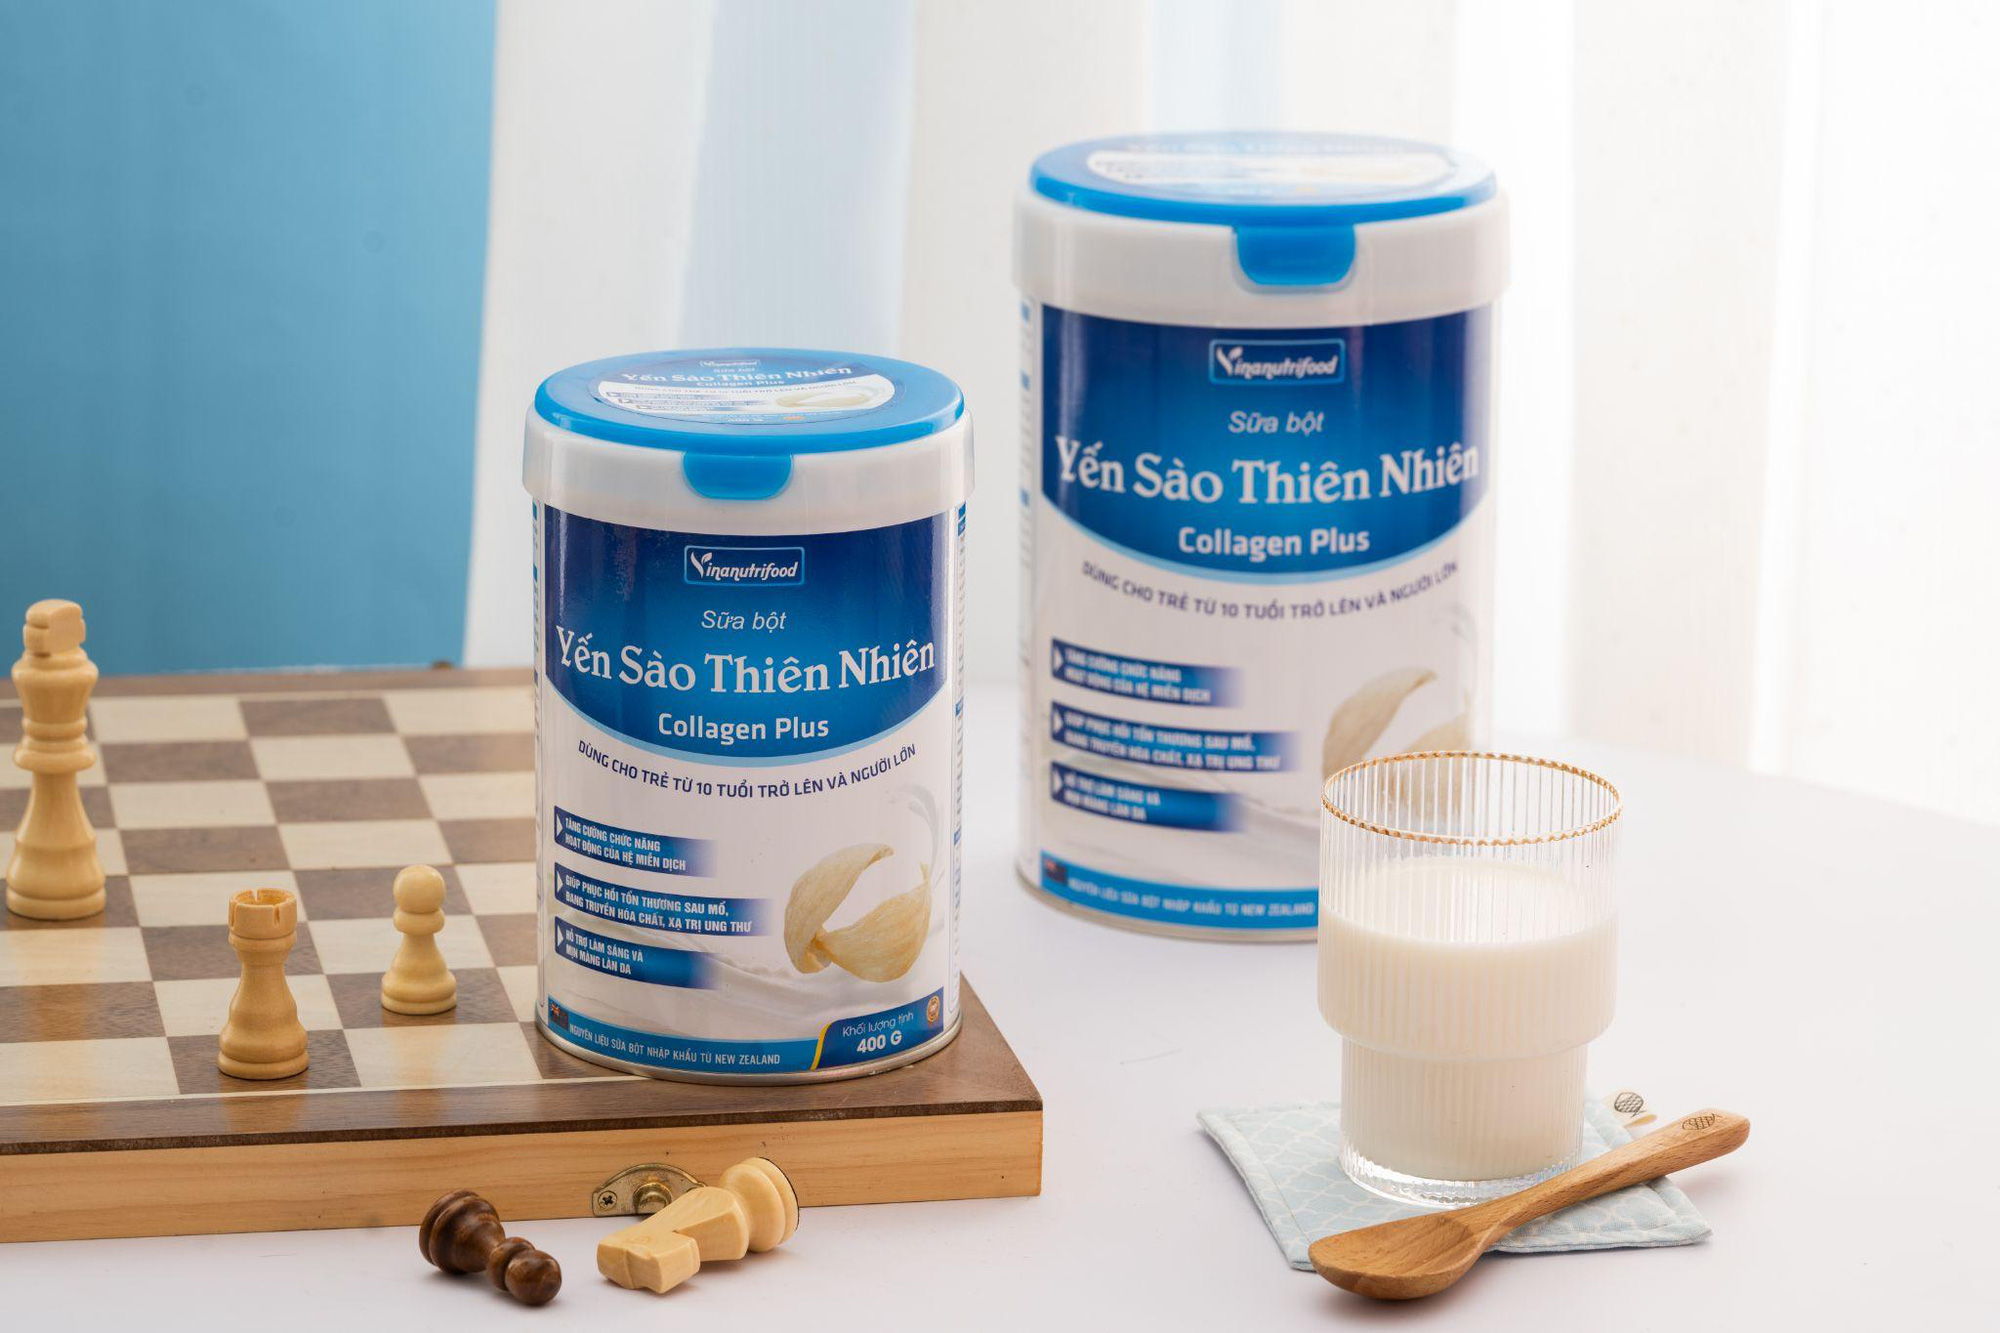 Sữa bột dinh dưỡng Vinanutrifood - Giải pháp dinh dưỡng trọn vẹn cho sức khỏe - Ảnh 4.